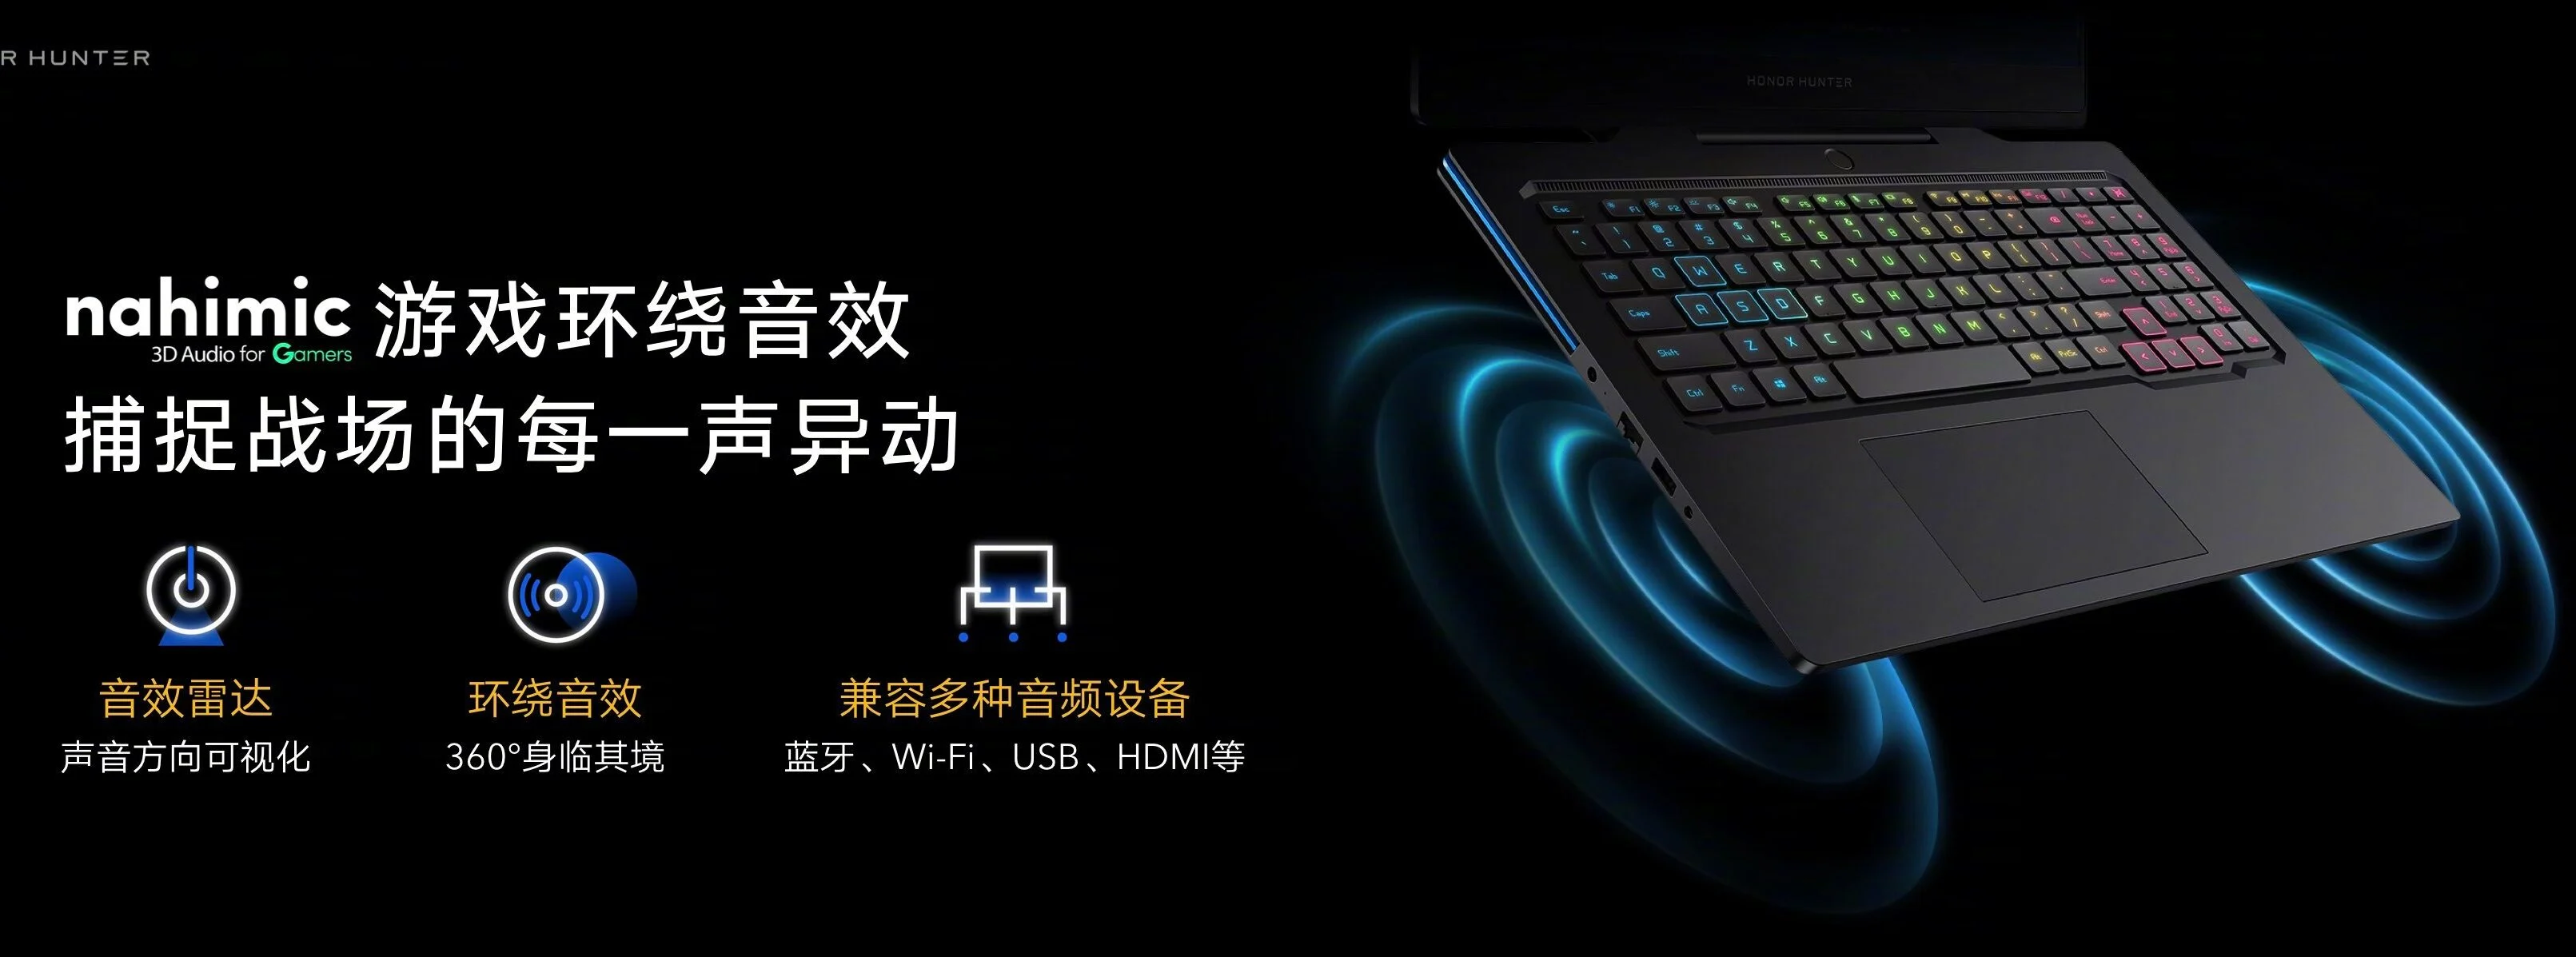 Honor представила свой первый игровой ноутбук — Honor Hunter V700 (4n8yl6ncfhcw78cmnadc287e4 e1600243896240)